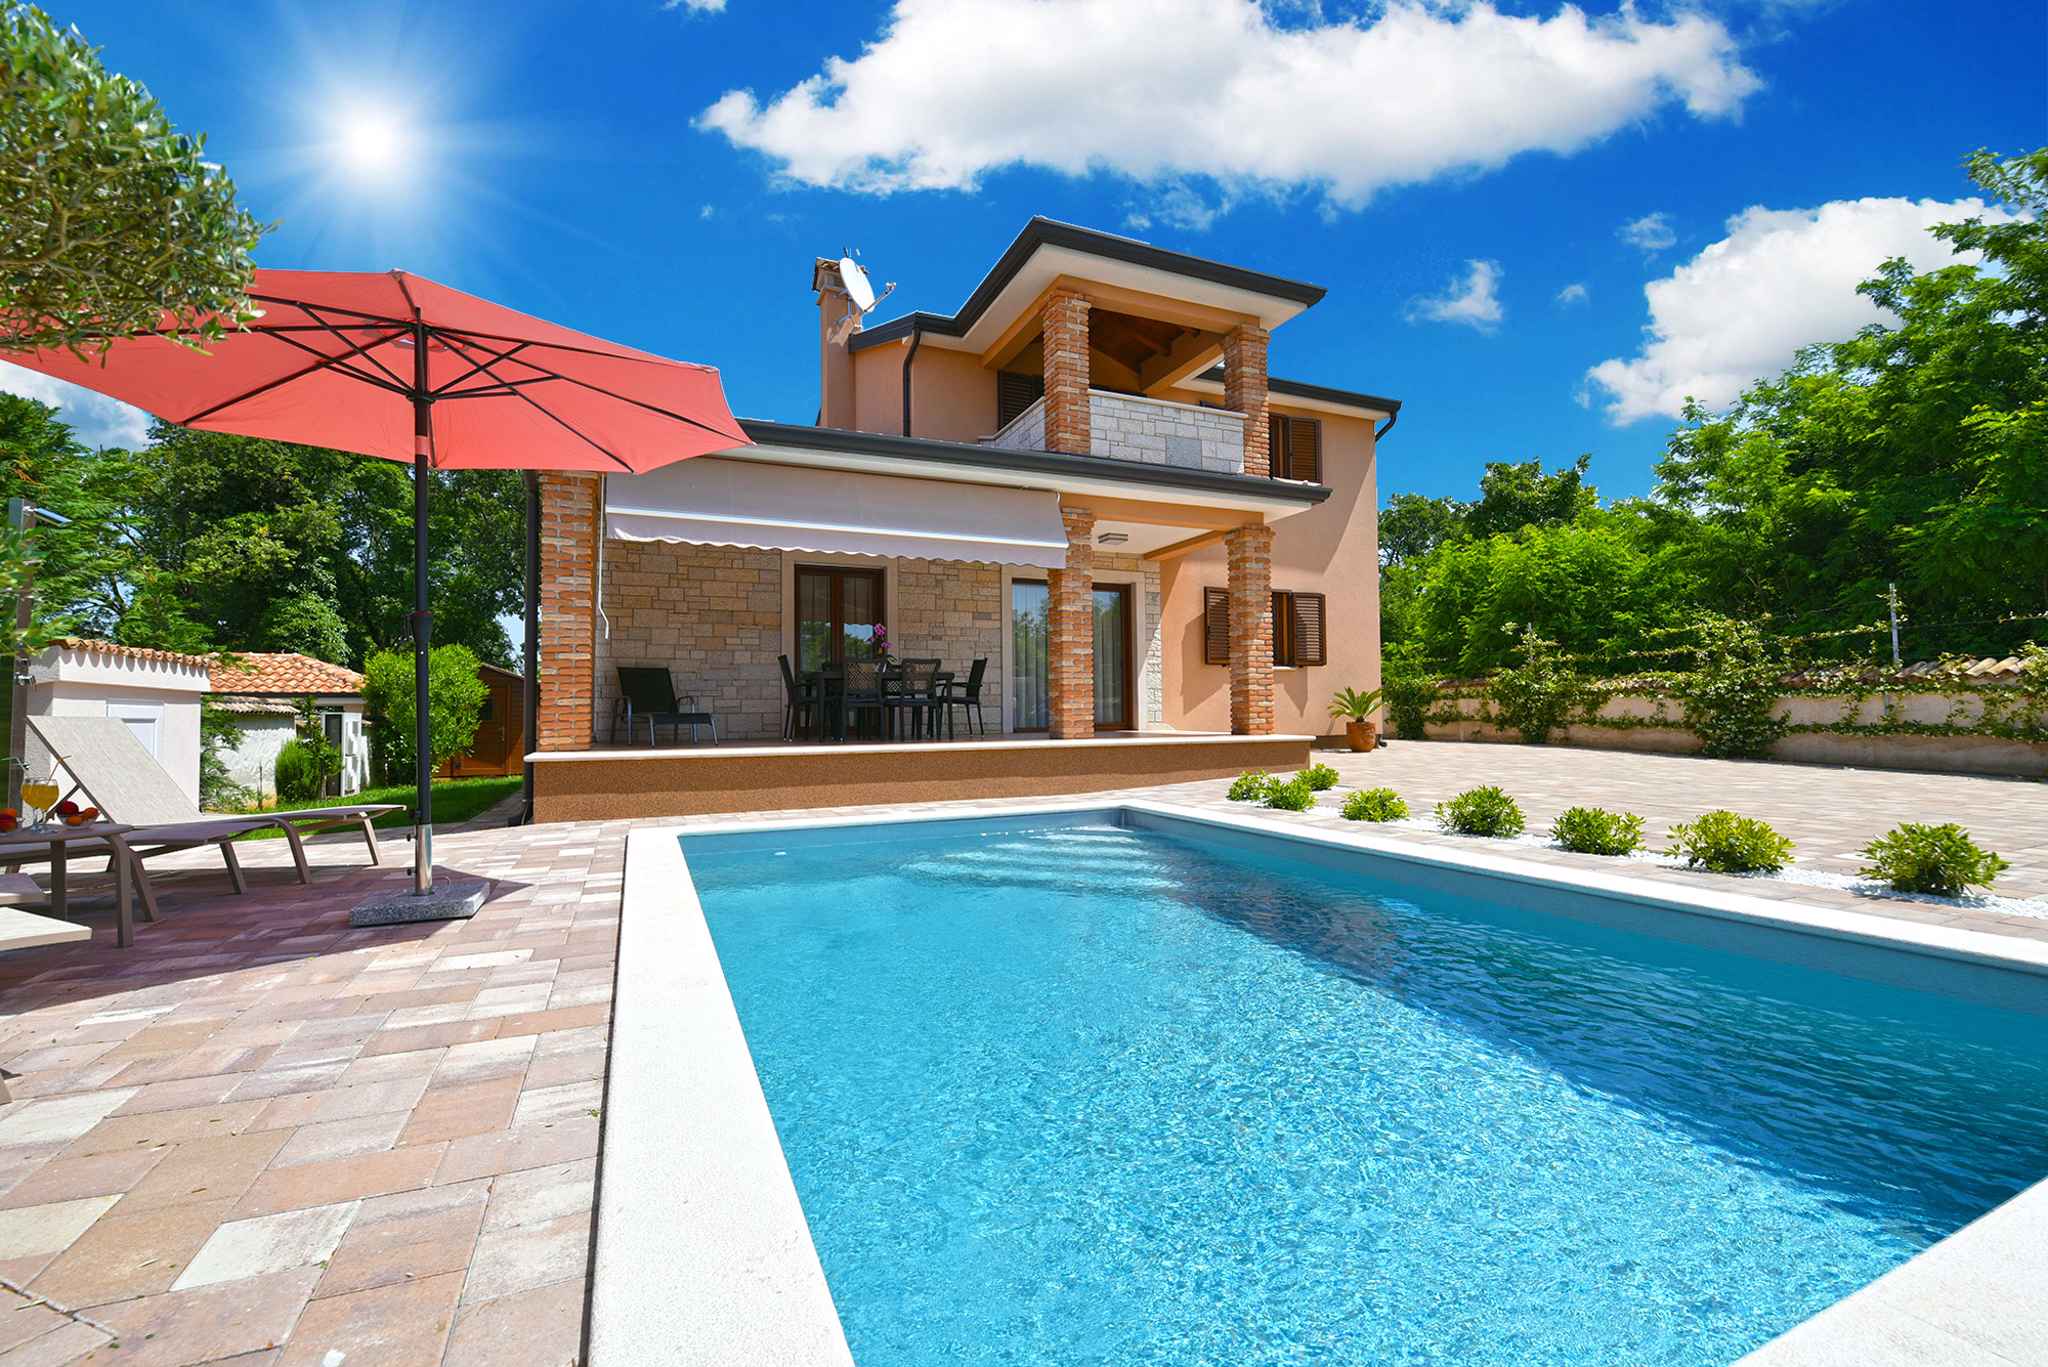 Villa mit Swimmingpool und großer Sonnenterr Ferienhaus in Kroatien